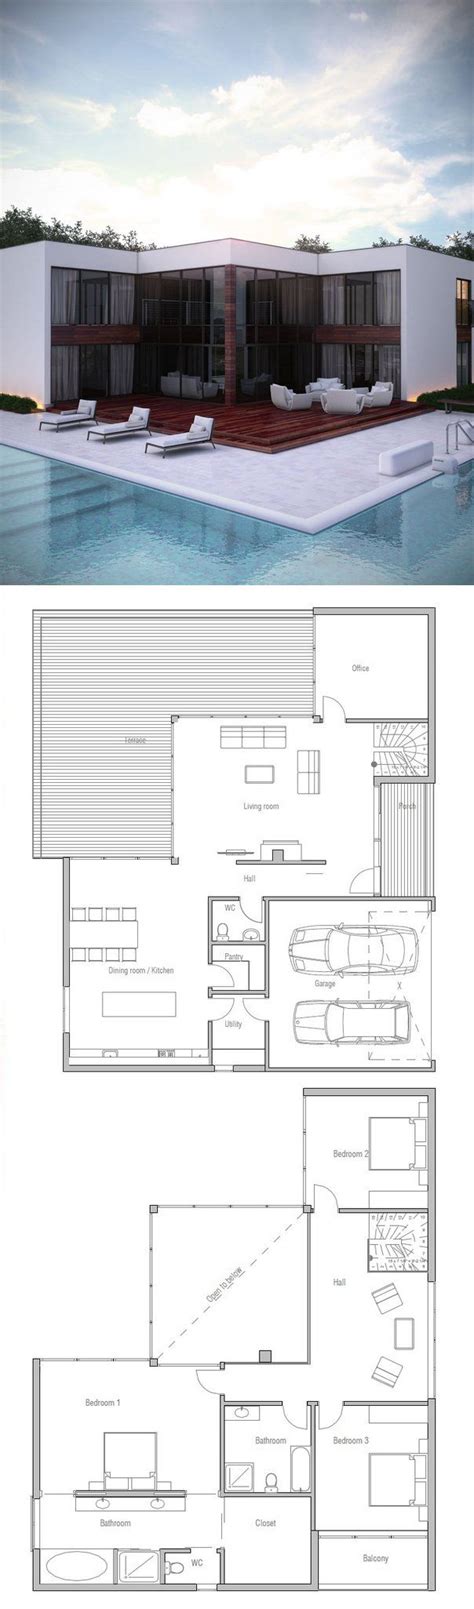 sims  house blueprints images  pinterest floor plans architecture  home plans